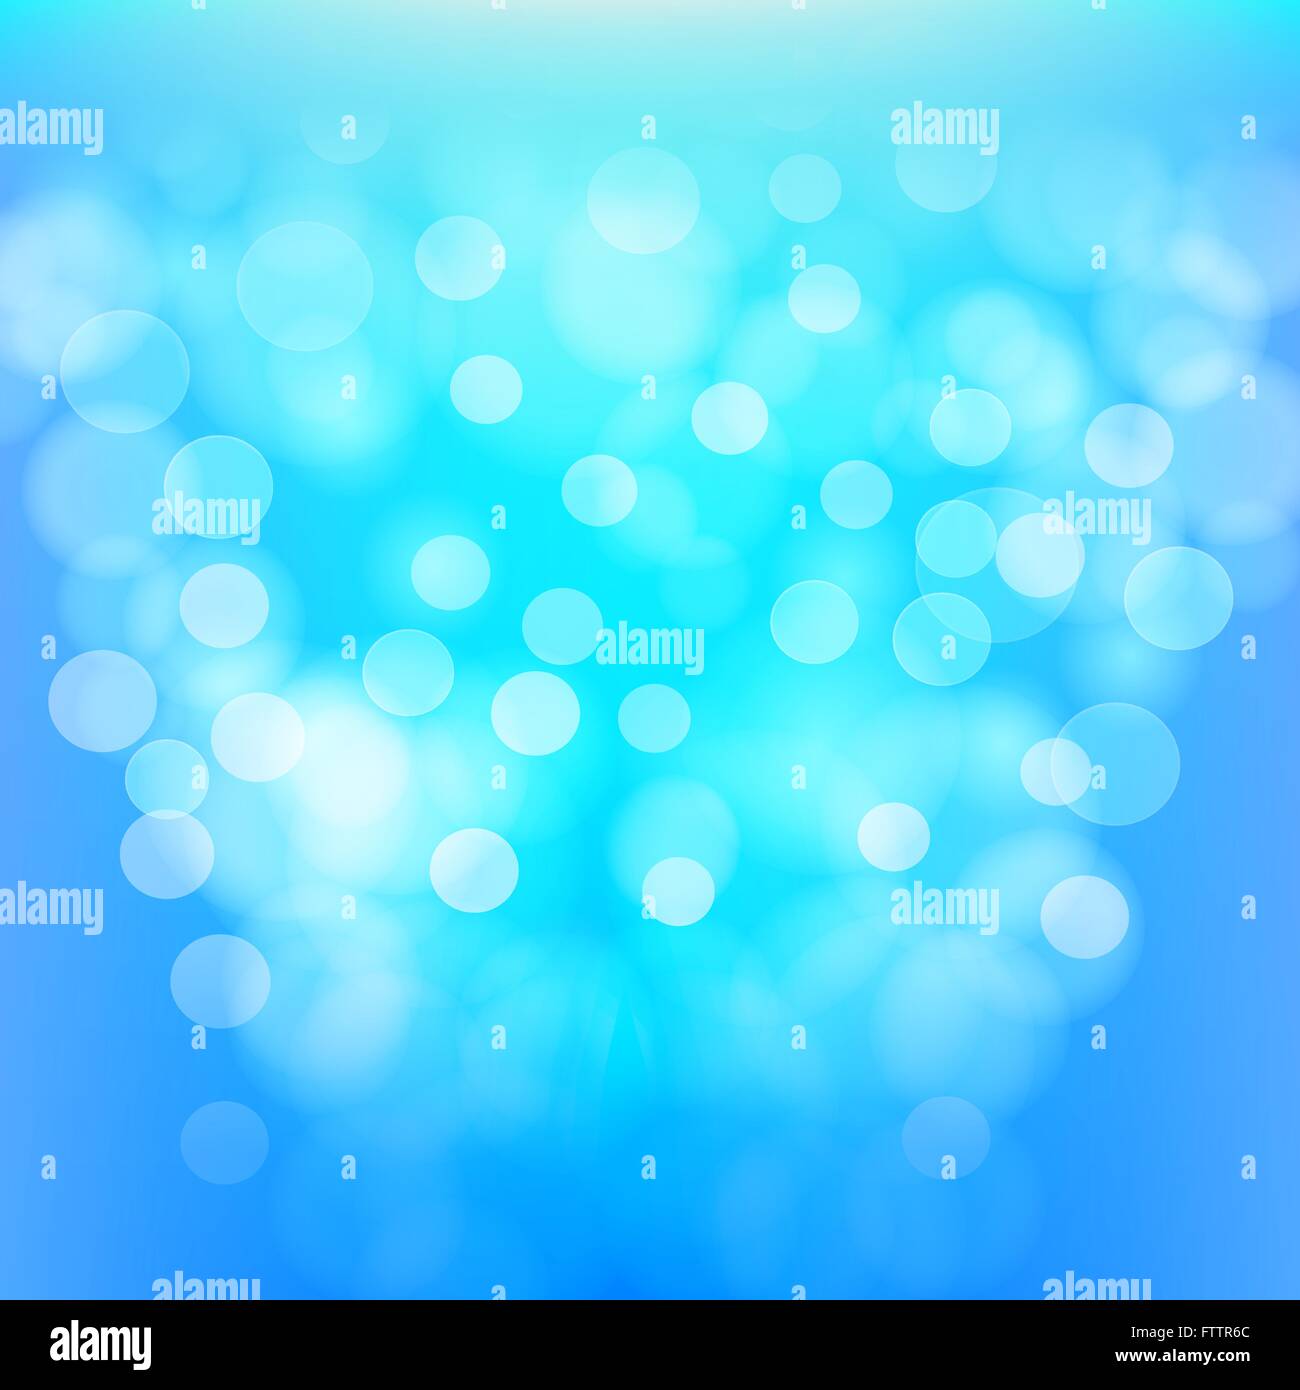 Zusammenfassung Hintergrund mit Lichteffekten Stock Vektor